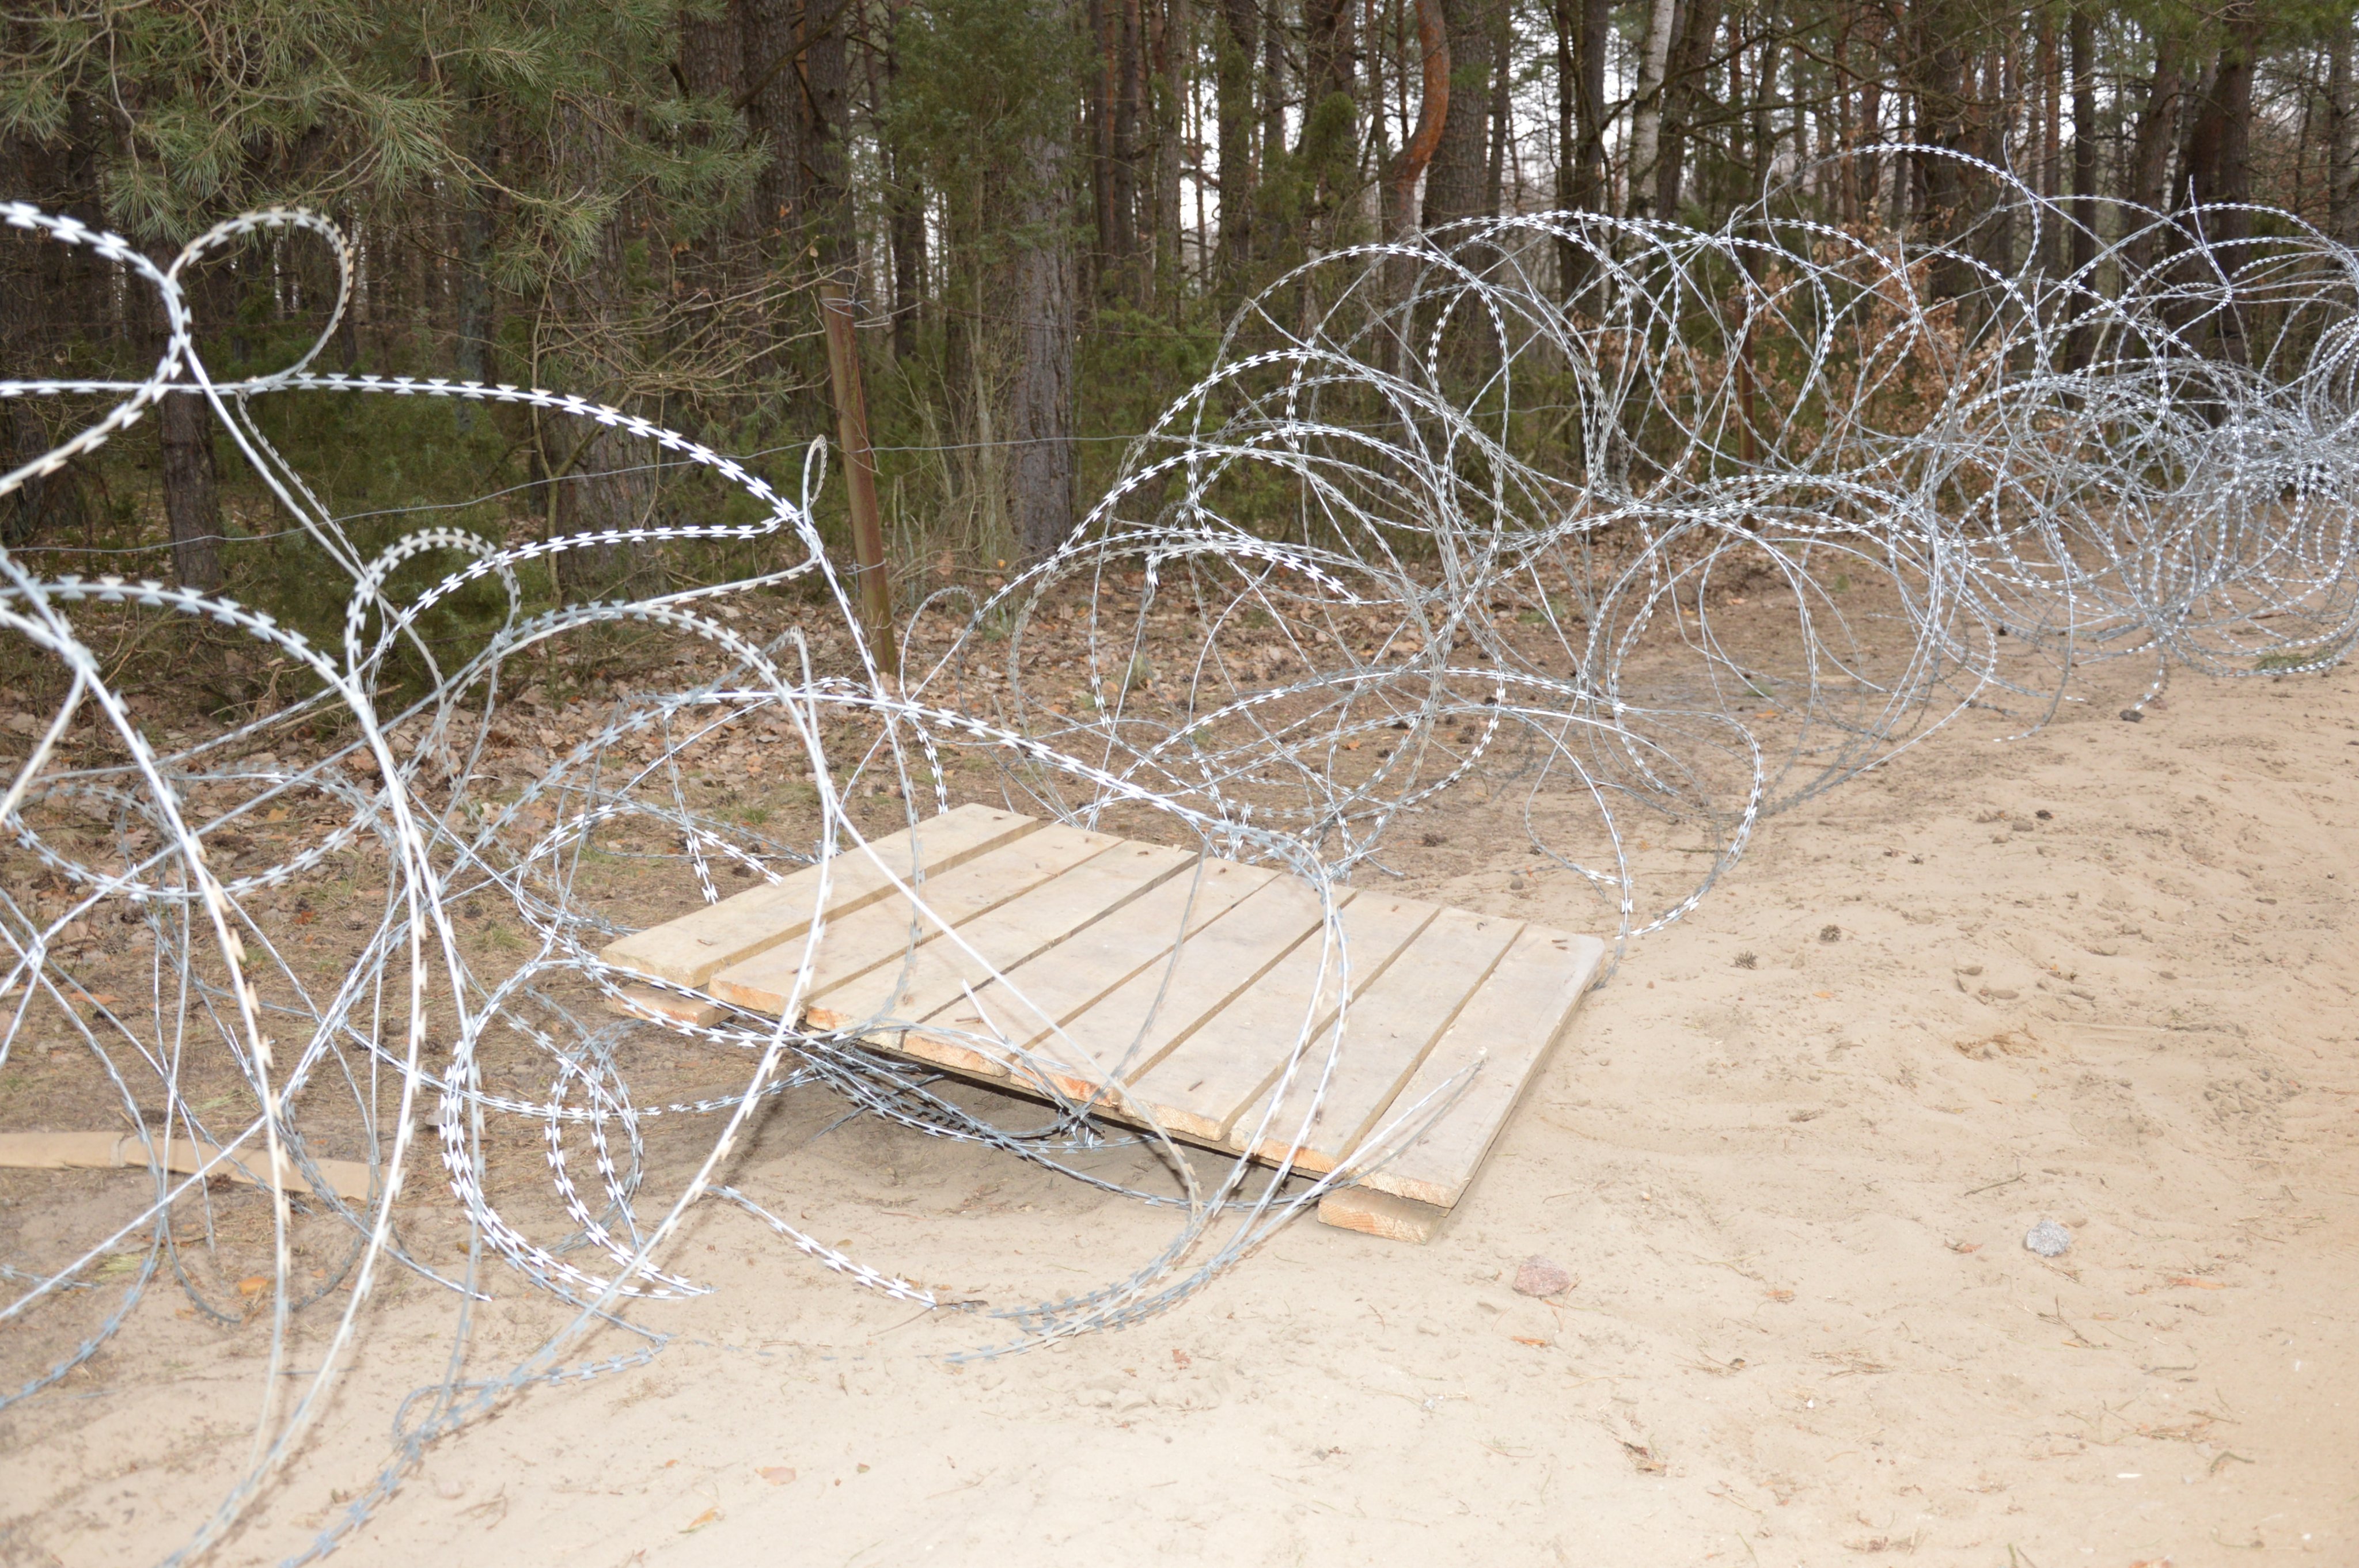 99 cudzoziemców próbowało nielegalnie przekroczyć polsko–białoruską granicę. Nie ustają ataki na polskie służby (zdjęcia)